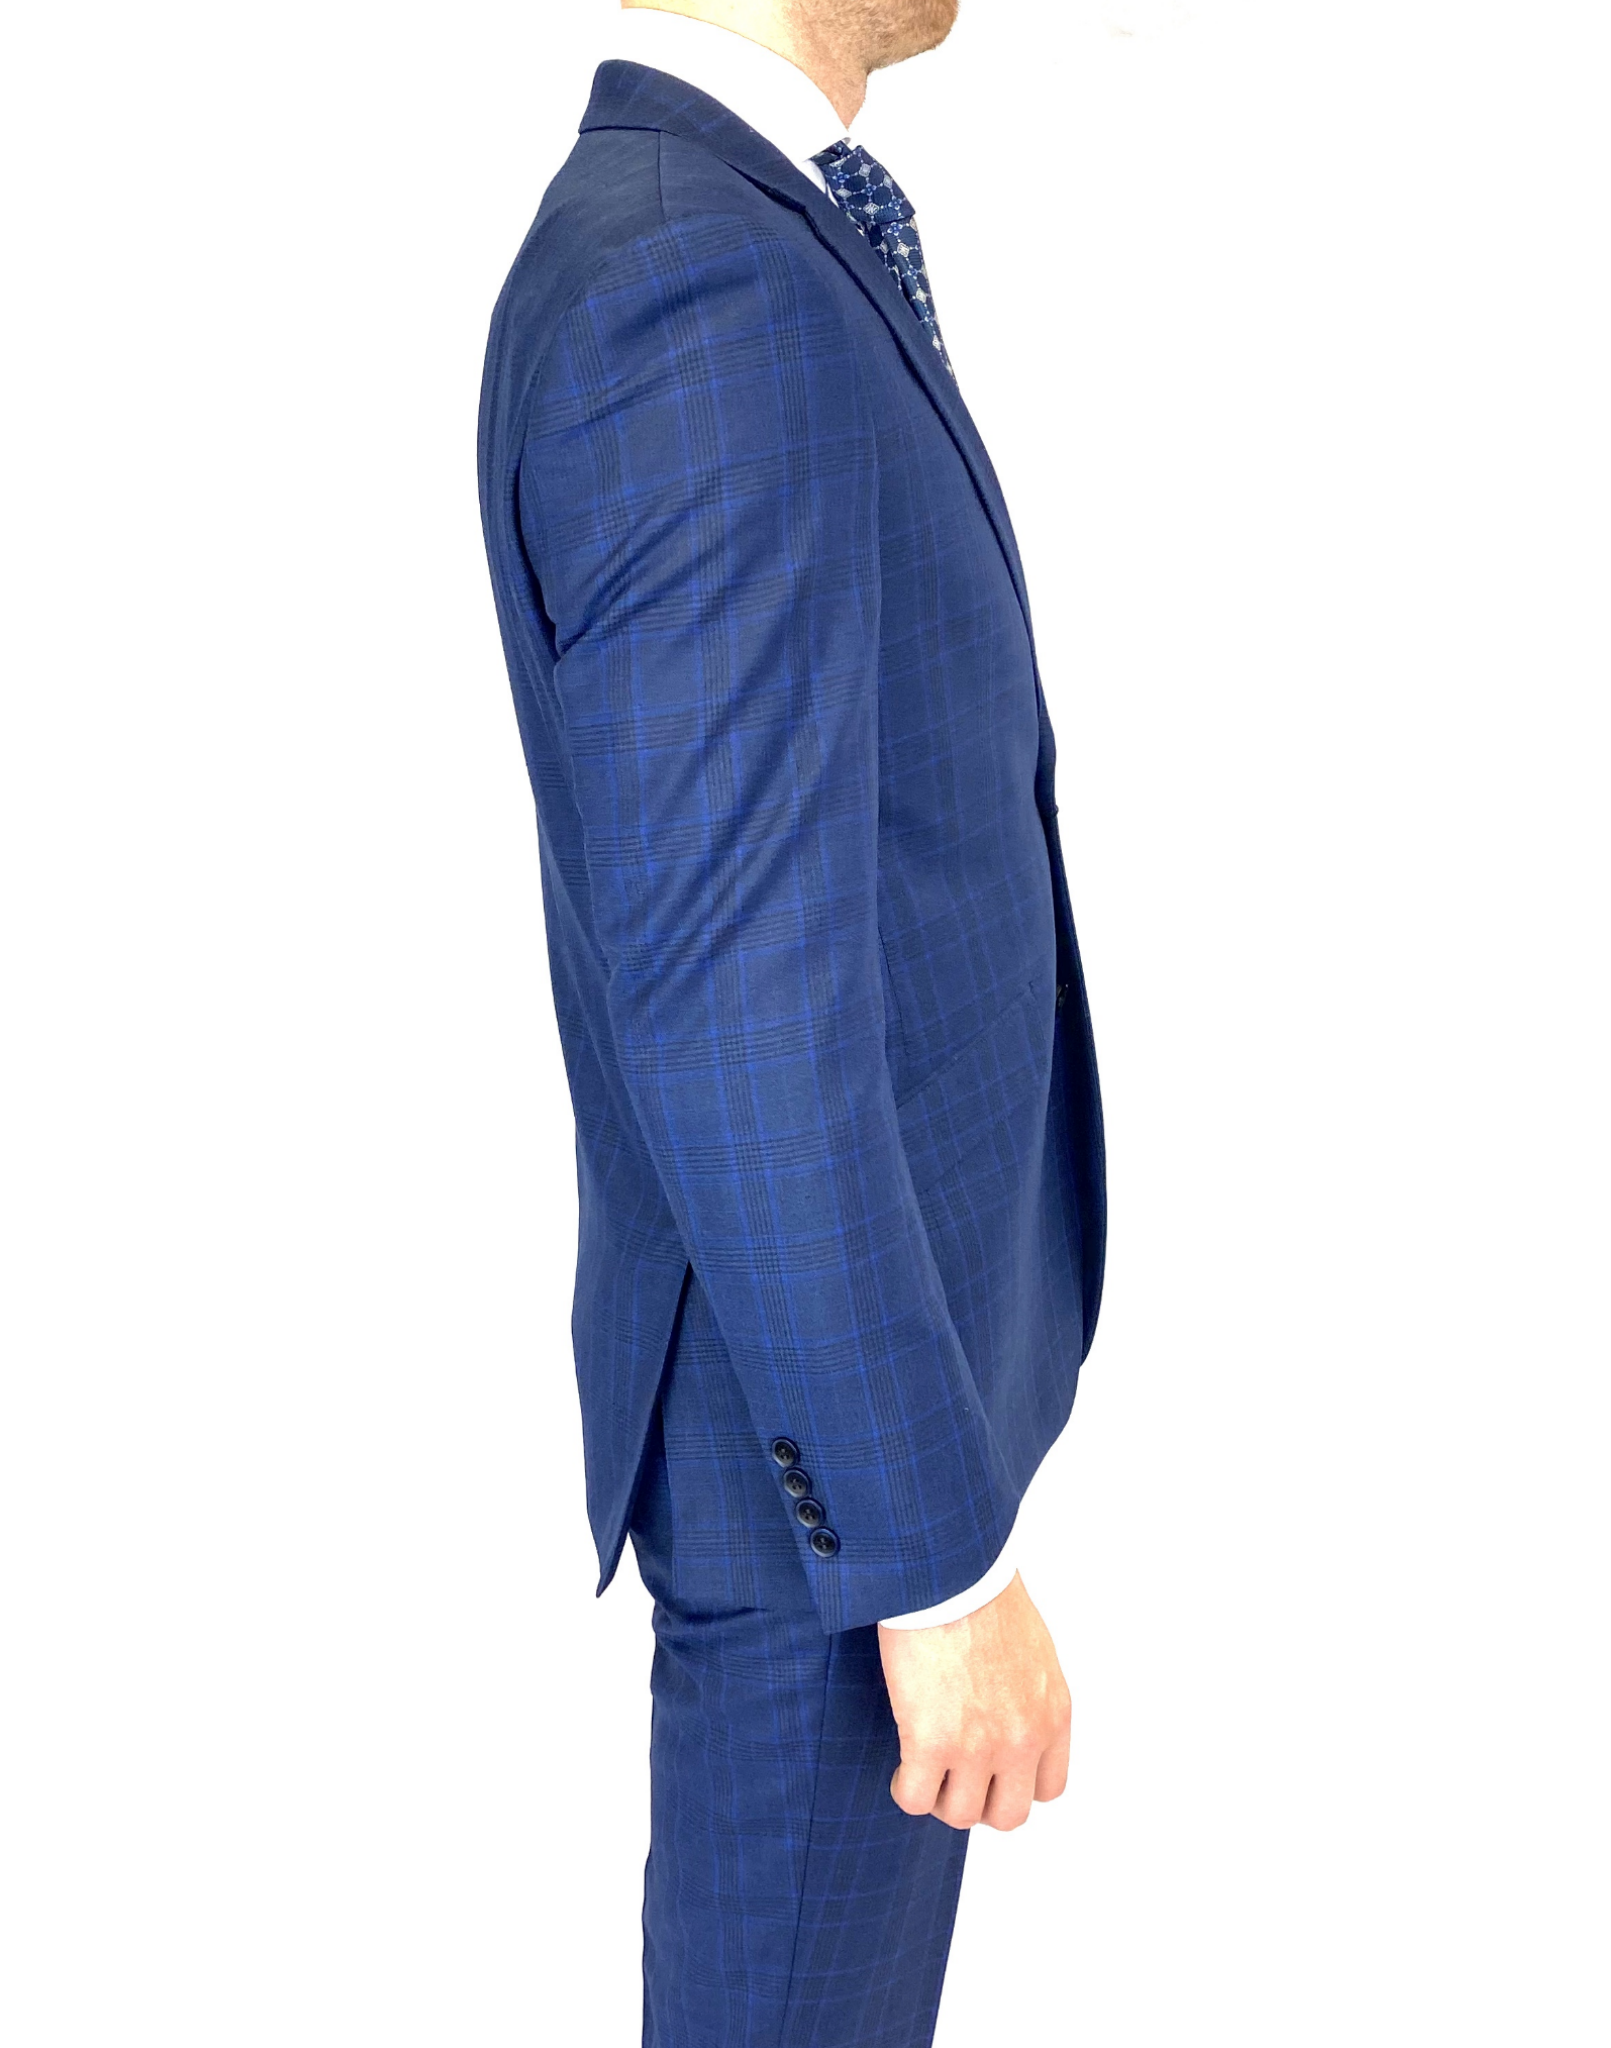 Renoir Slim Fit Suit in Blue Window Pane Check